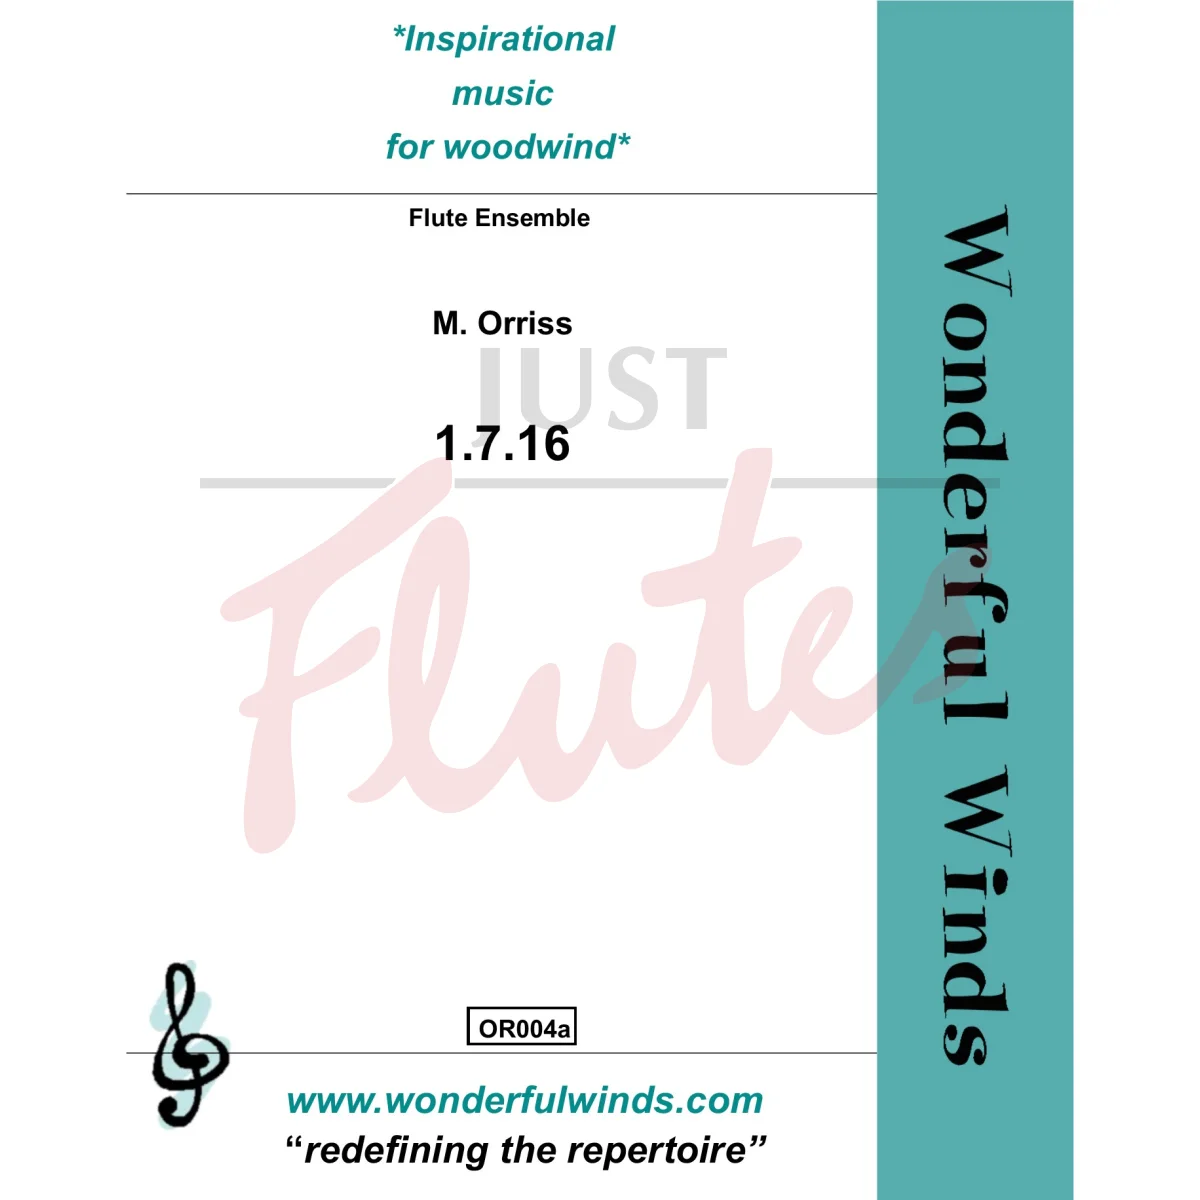 1.7.16 for Flute Ensemble